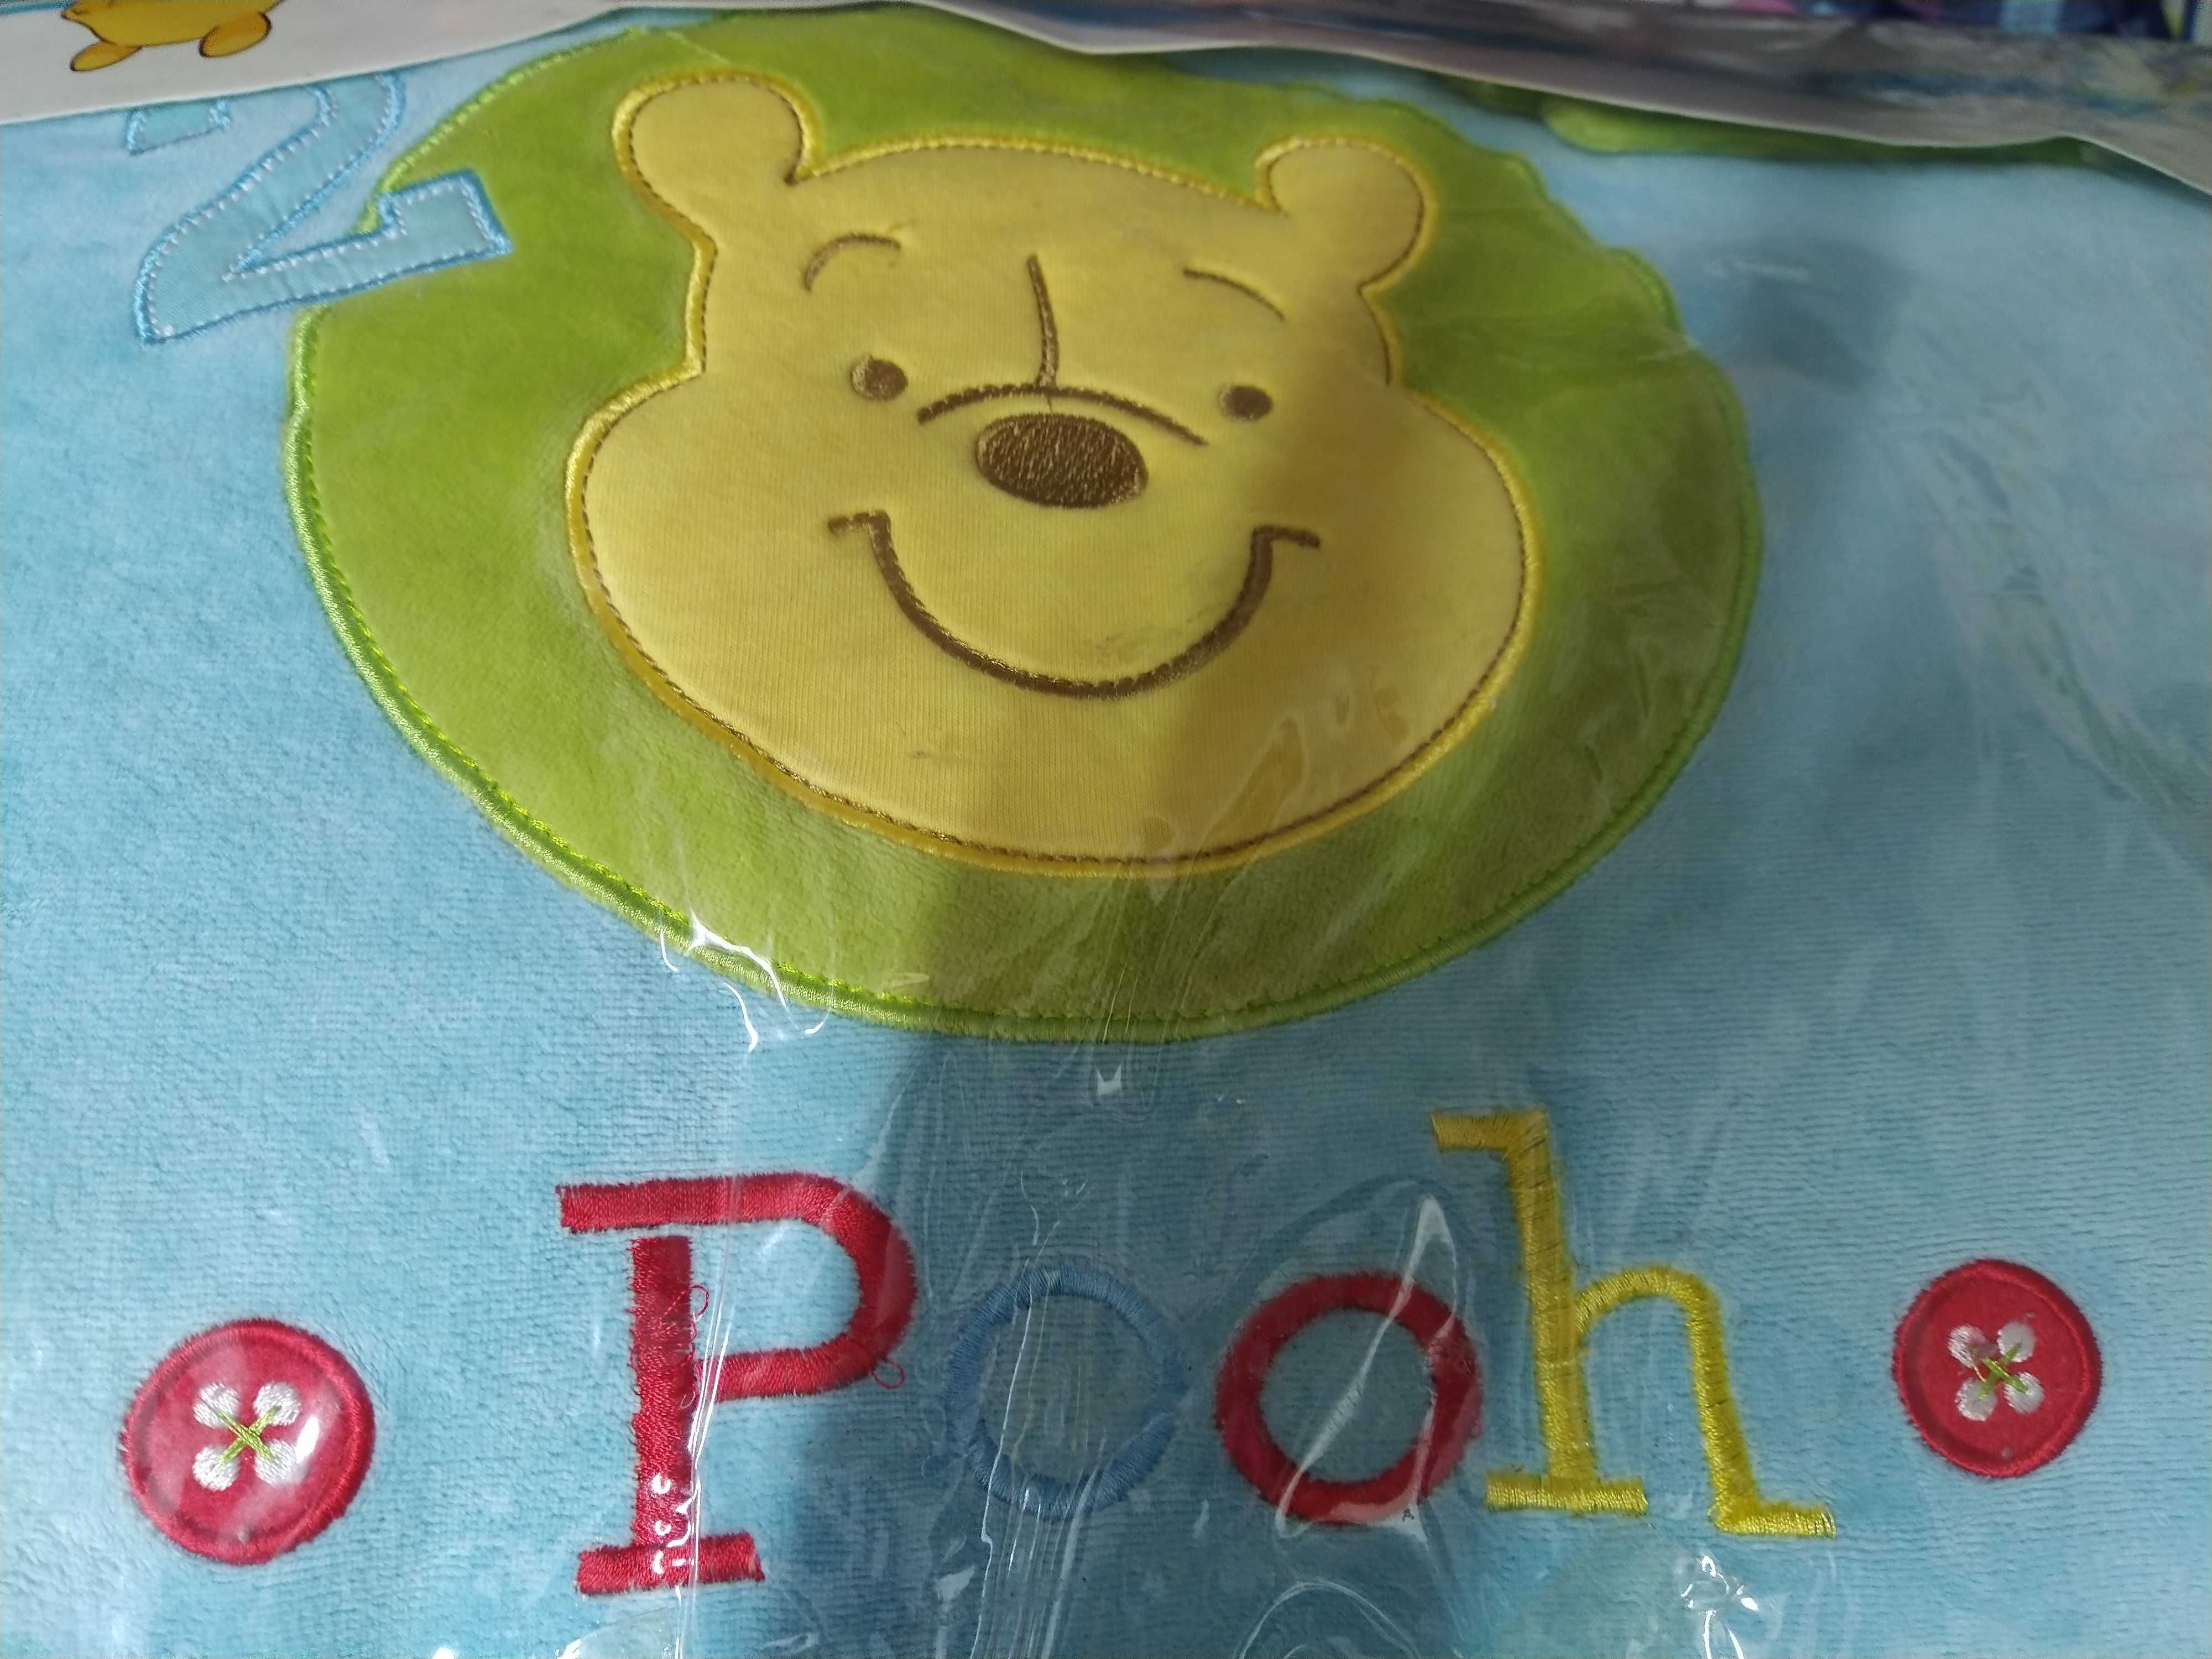 Vendo resguardo para cama de bebé do Winnie de Pooh